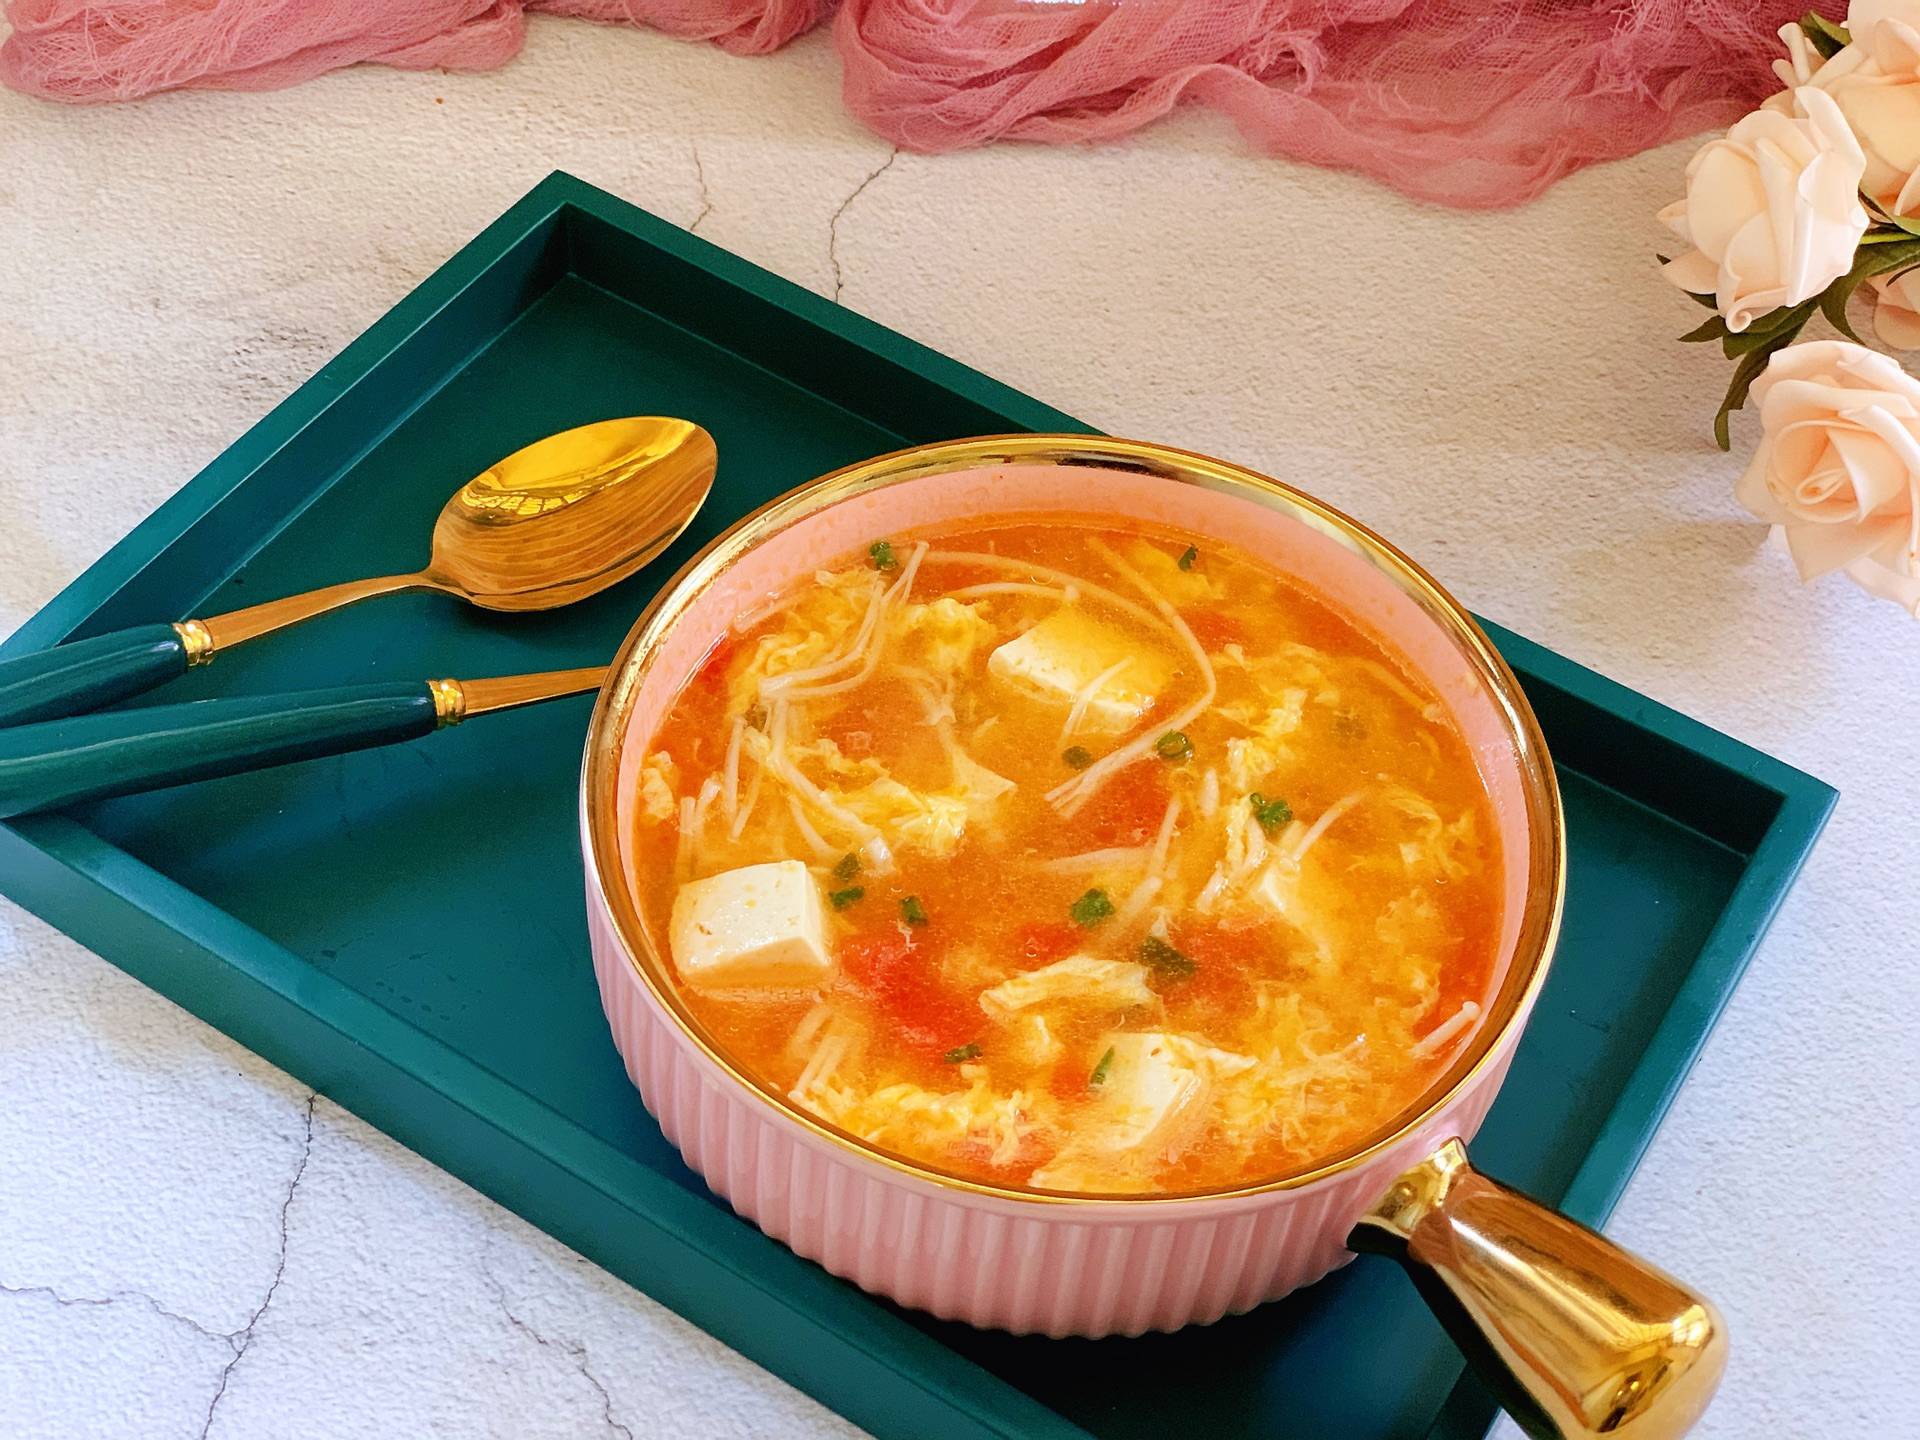 原创天冷多喝汤,分享一道家常番茄豆腐汤,味道鲜美,营养丰富